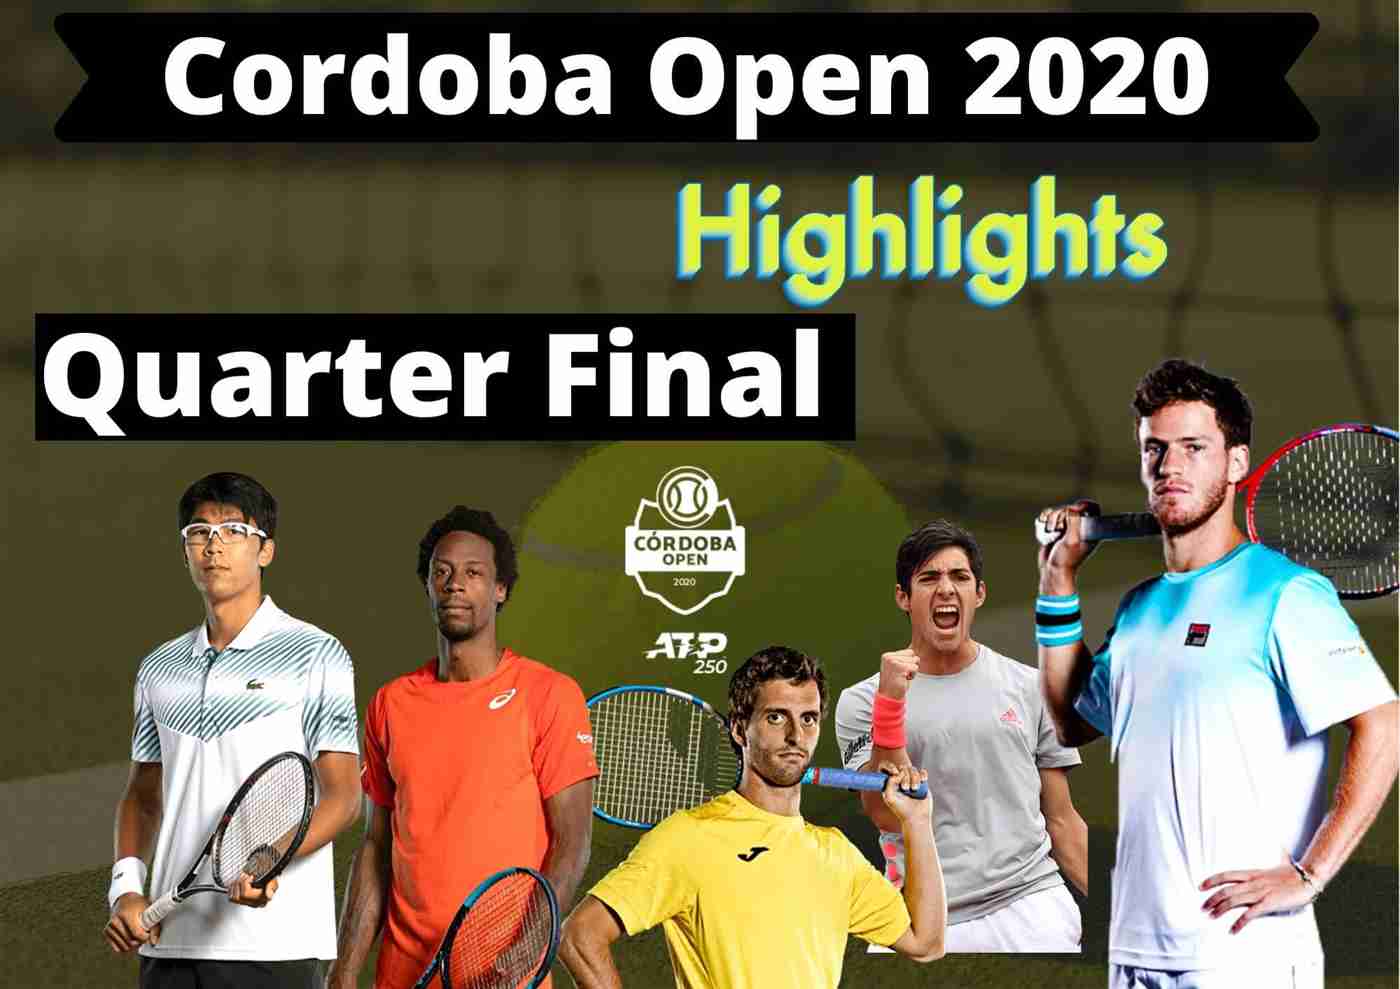 D Schwartzman Vs A Ramos Vinolas QuarterFinal Highlights 2020 Cordoba Open